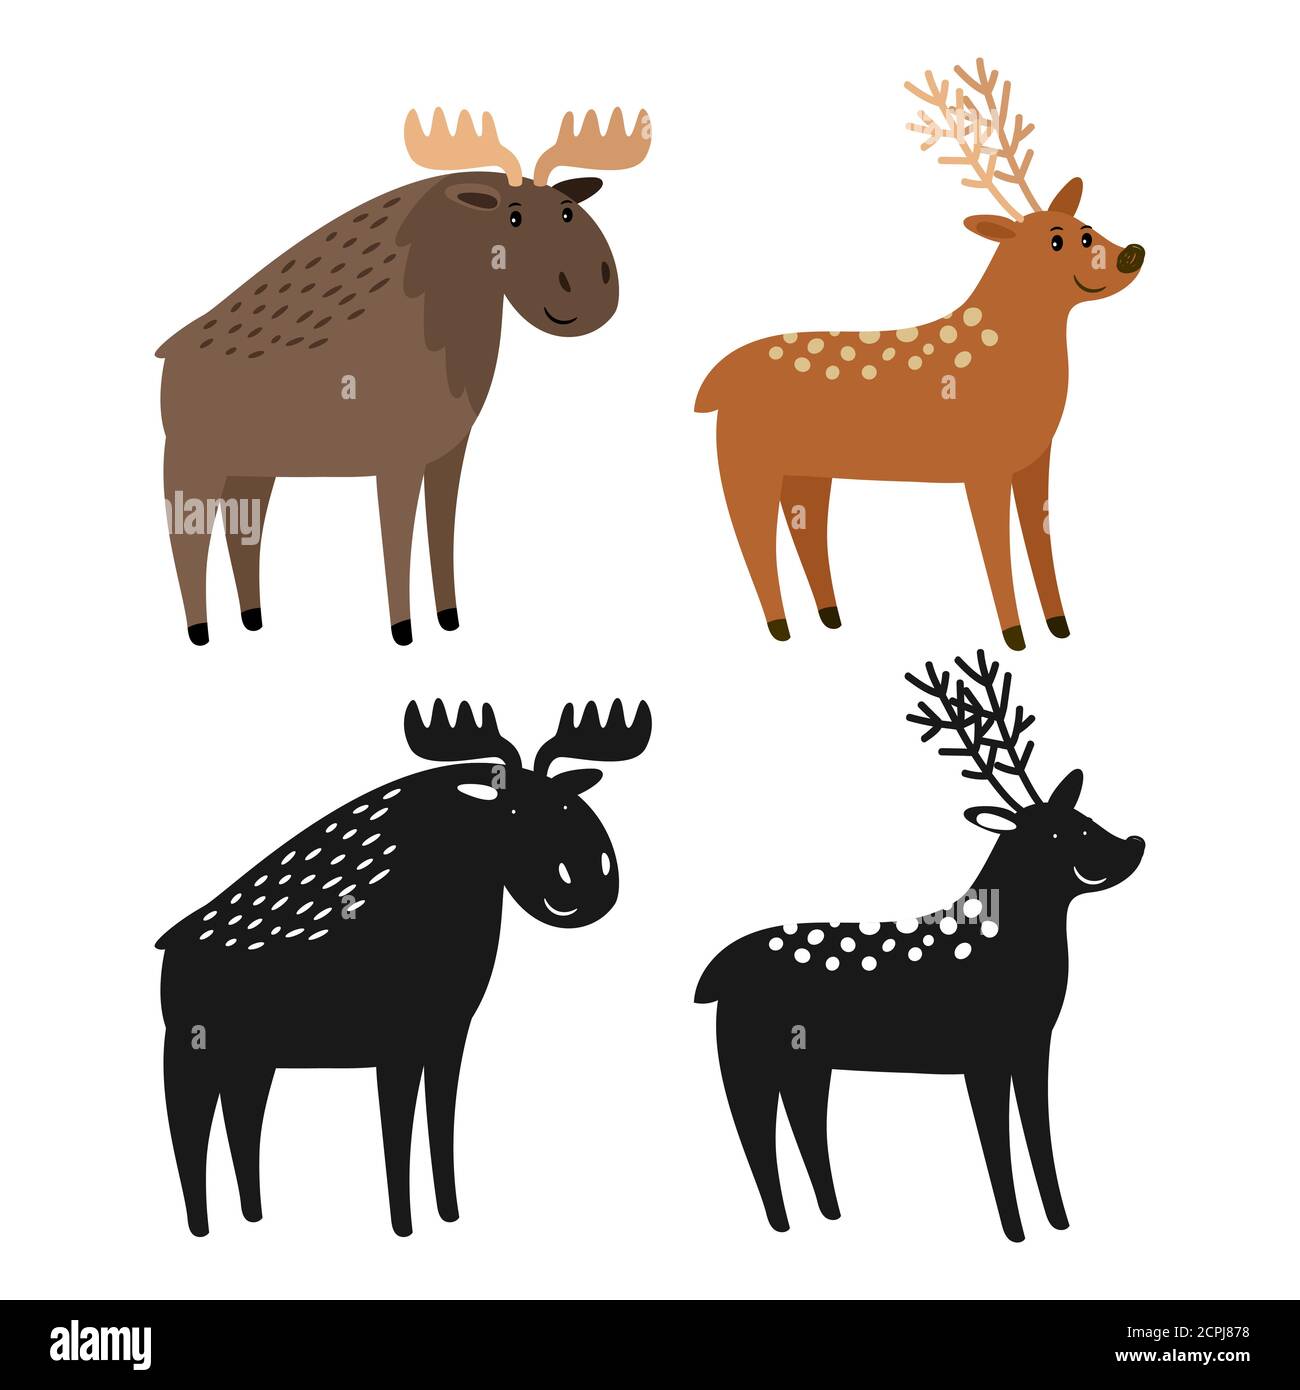 Fumetto personaggio alce e cervo e sagome animale illustrazione vettoriale. Silhouette di cervi e alci, renne e alci Illustrazione Vettoriale